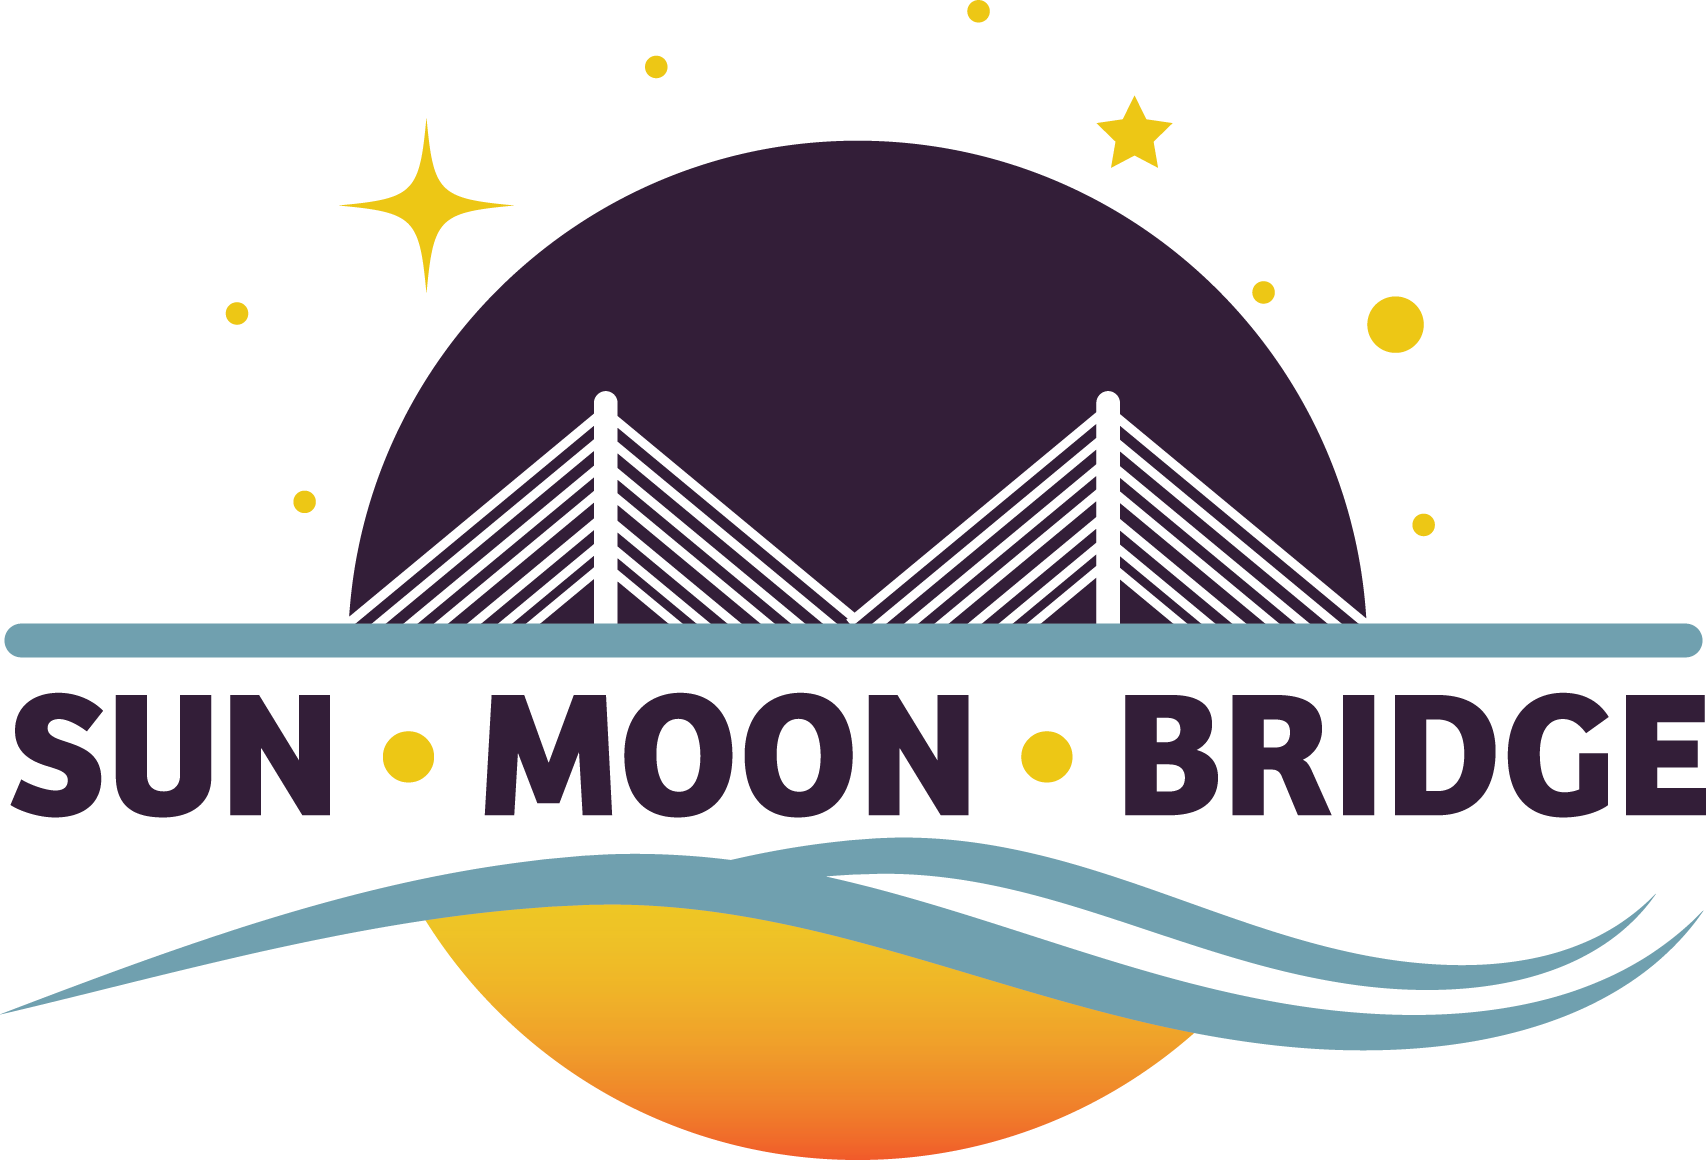 Sun Moon Bridge logo